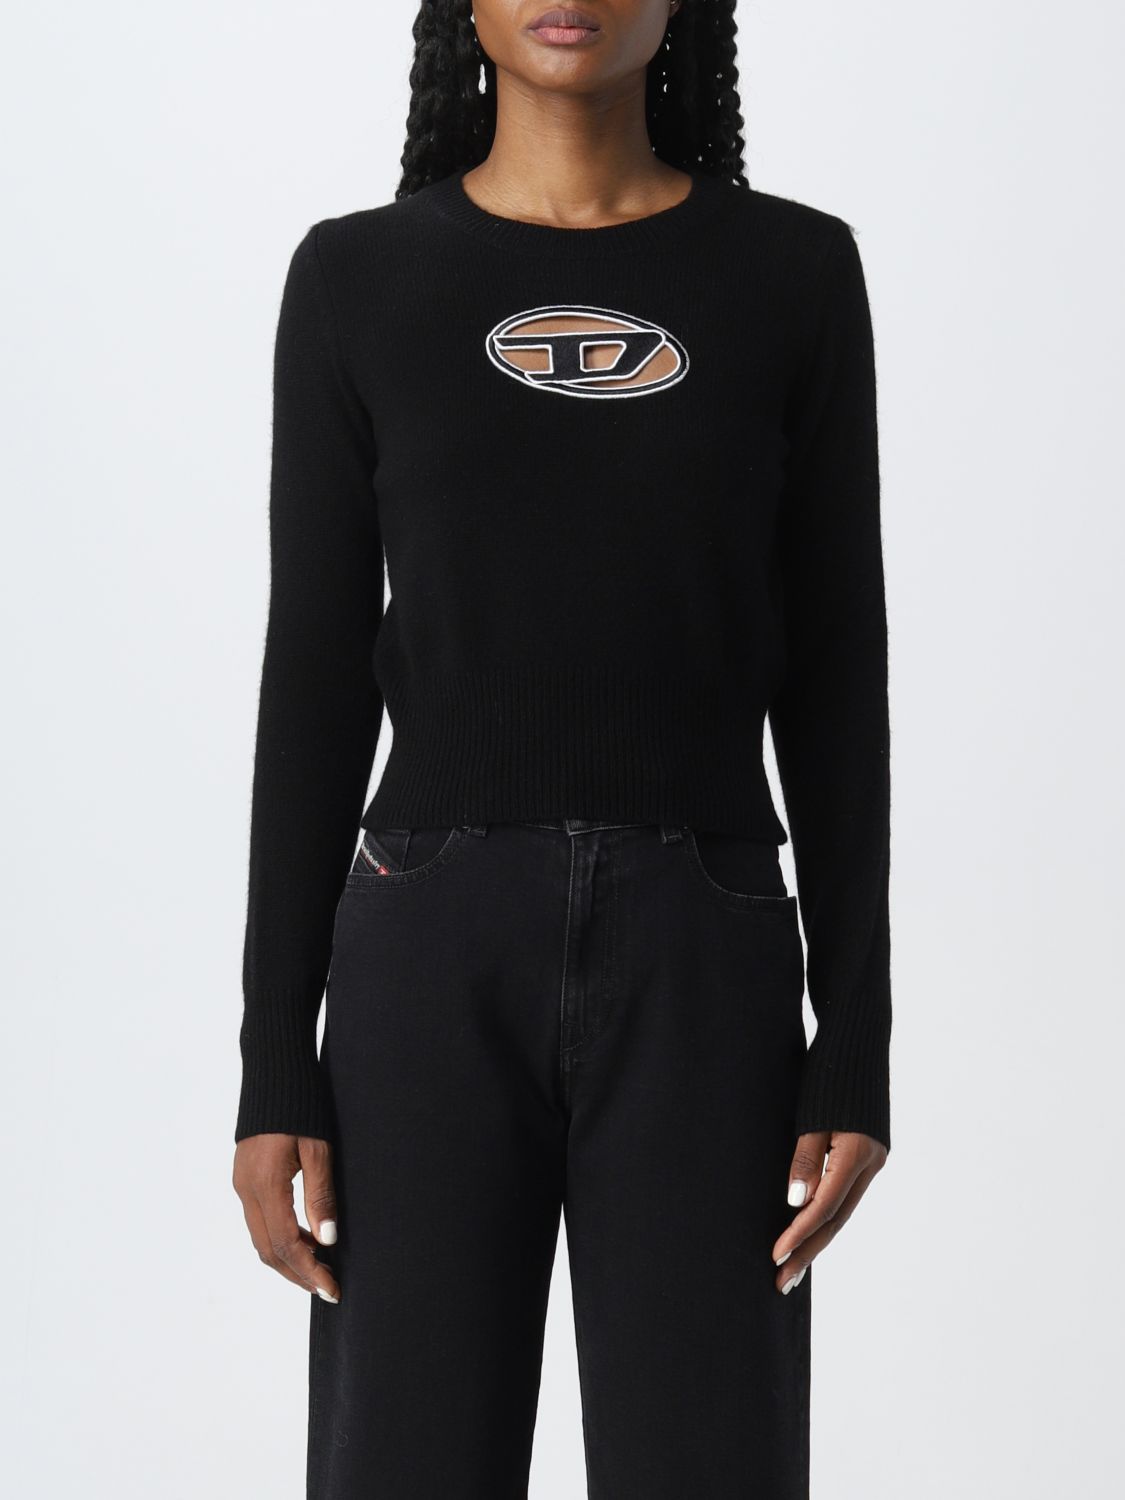 DIESEL: sweater woman - Black | Diesel sweater A067120KCAE online on